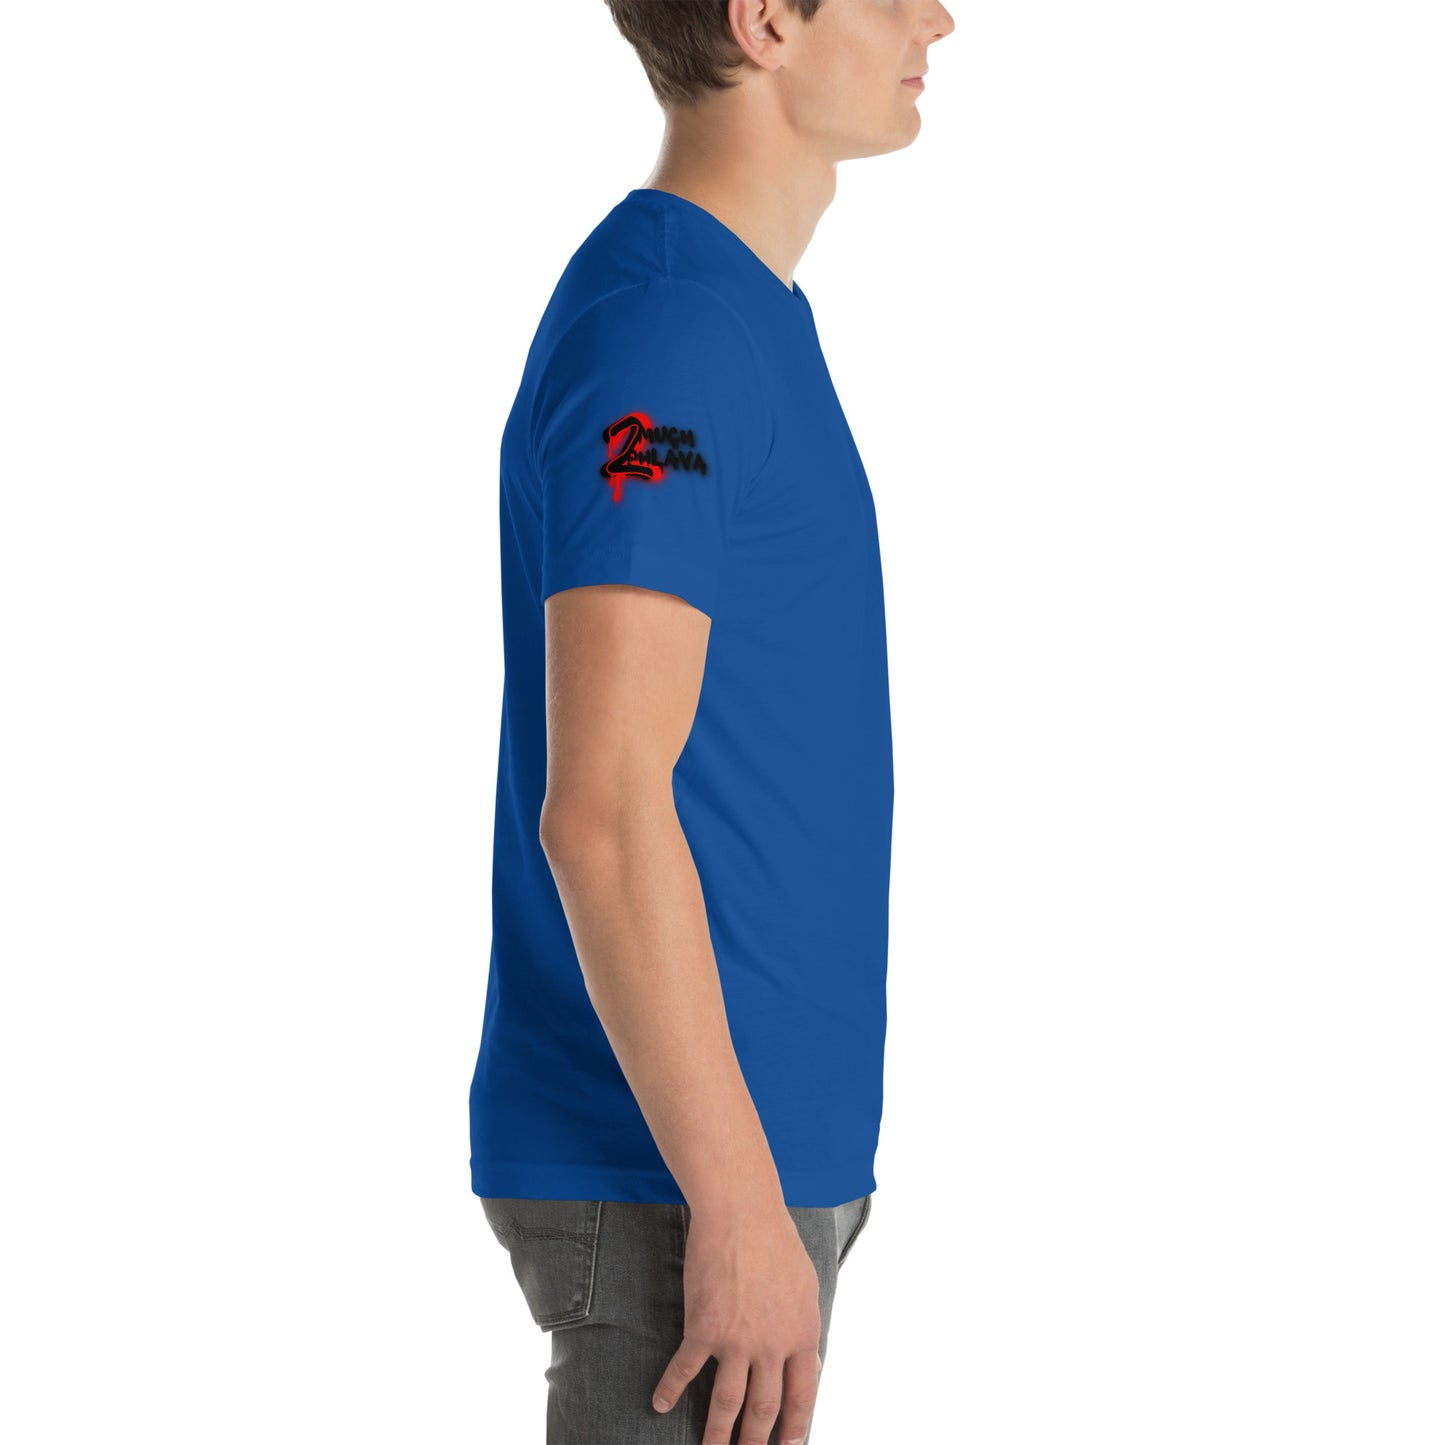 Unisex t-shirt - TMP 'OG1'